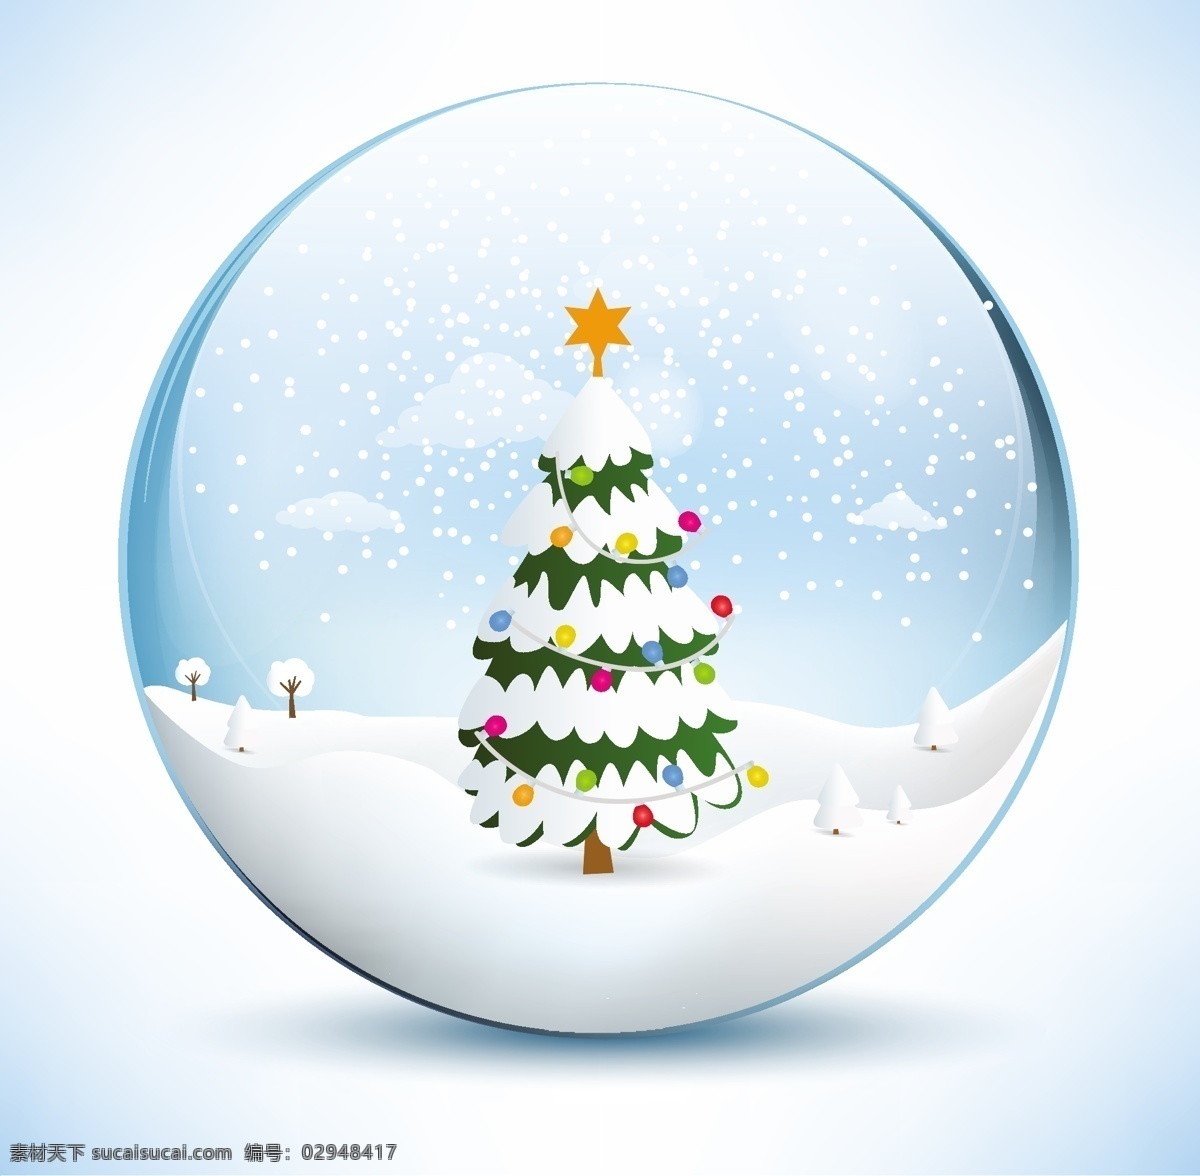 冬季 圣诞 水晶球 矢量